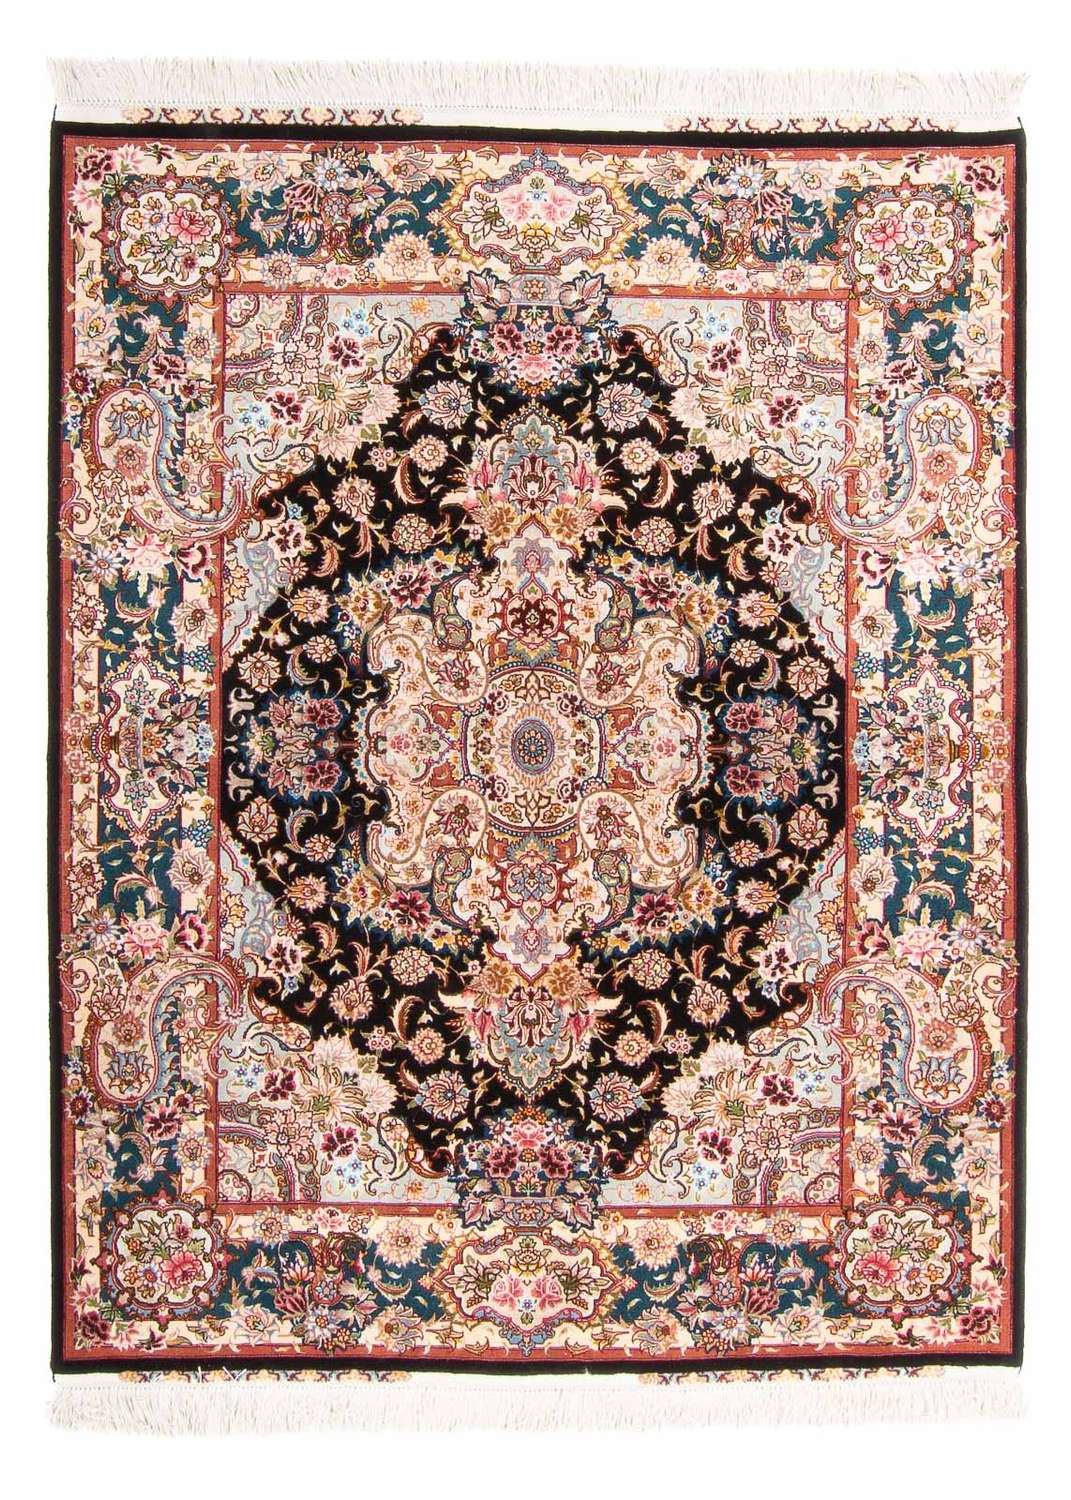 Dywan perski - Tabriz - Królewski - 200 x 150 cm - ciemnoniebieski